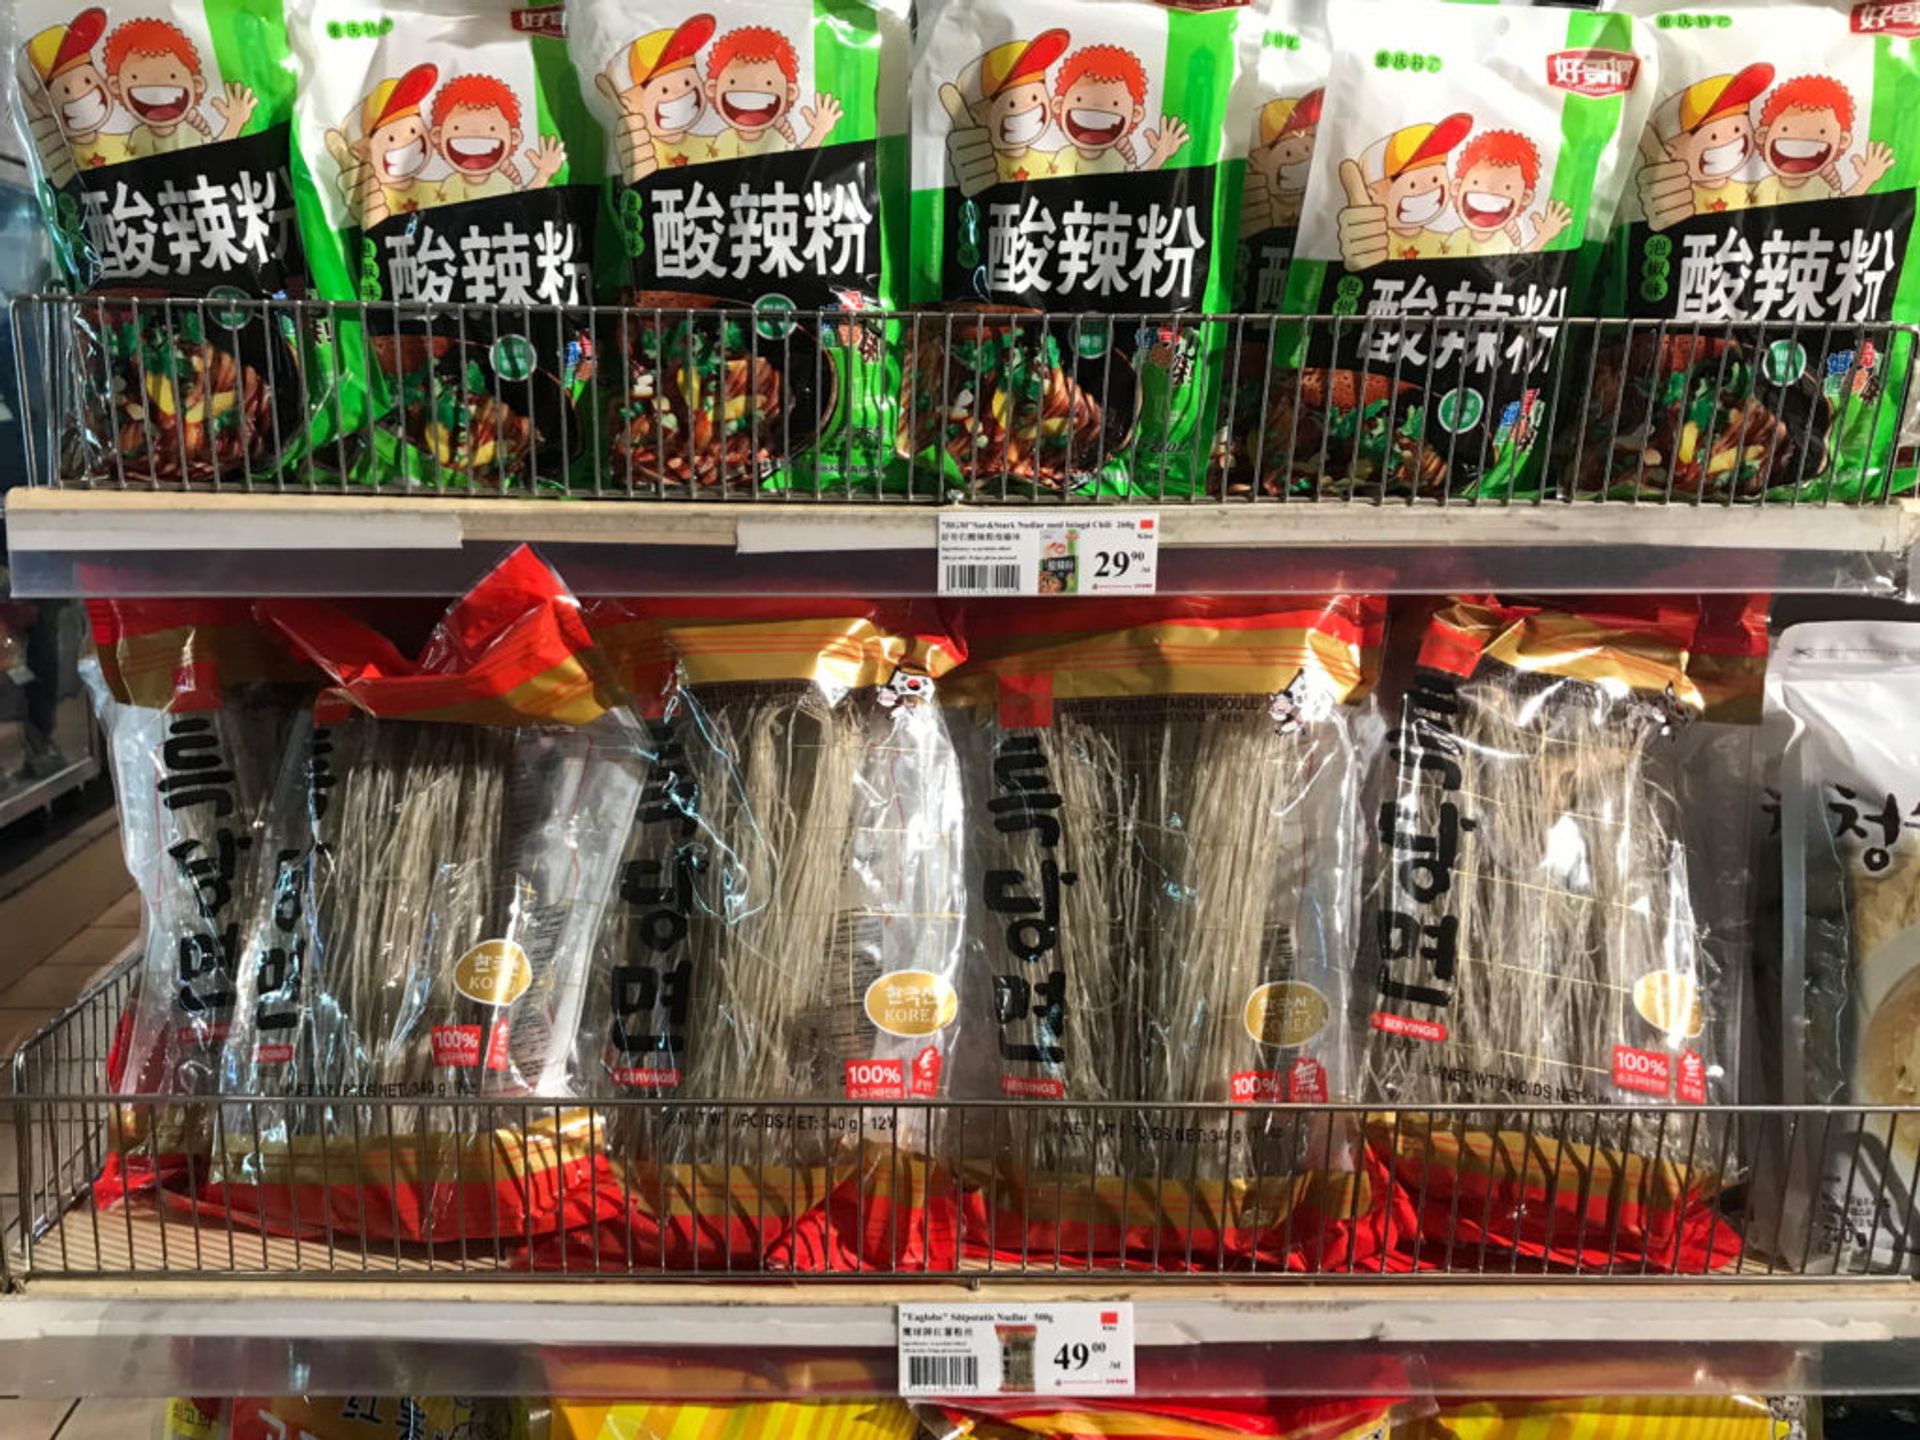 Shelves of noodles.